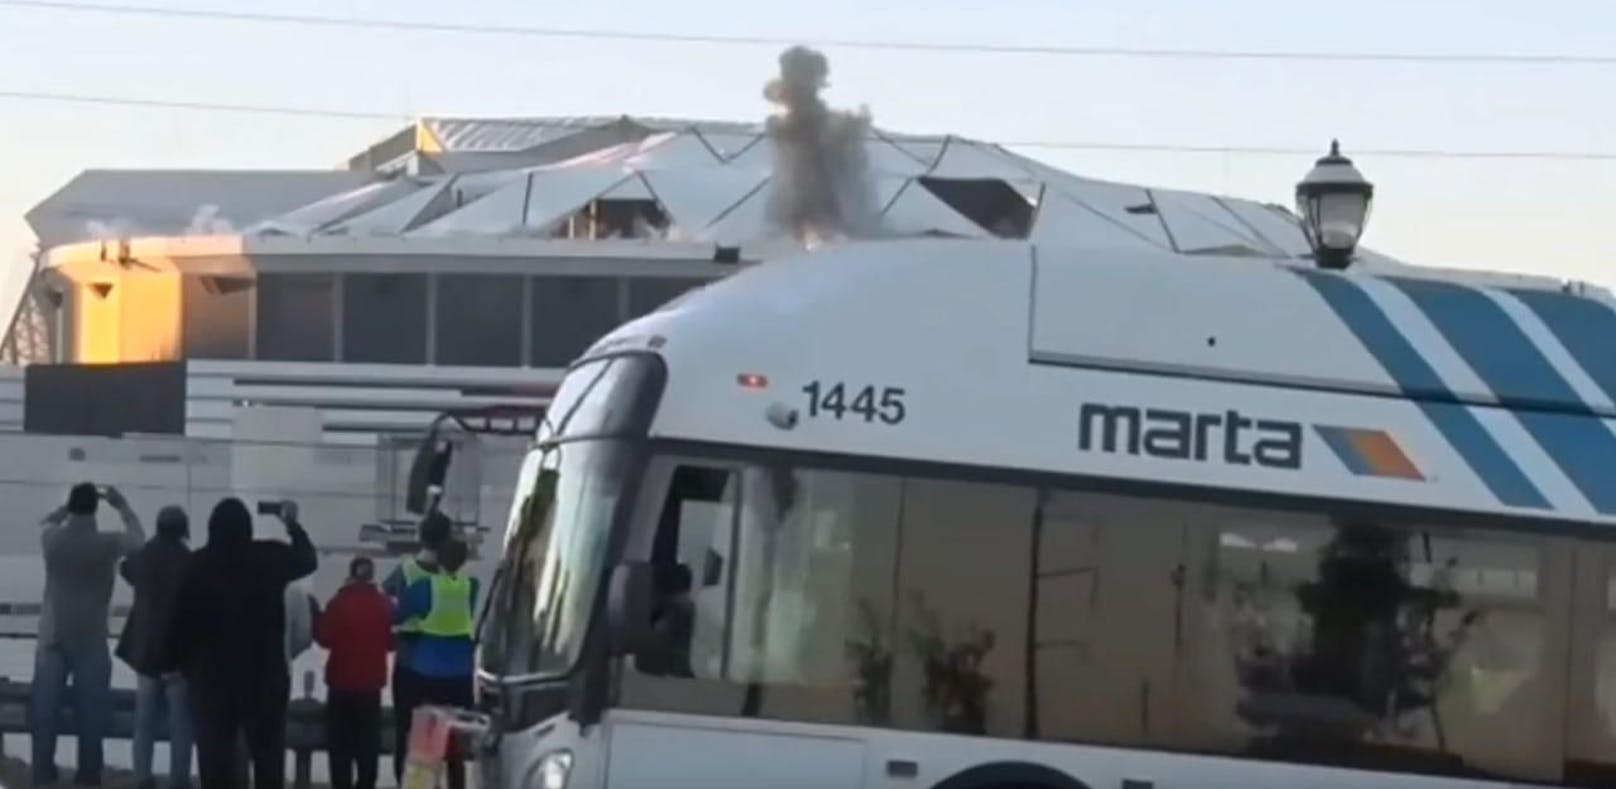 Bus blockt Kamera bei Stadion-Sprengung